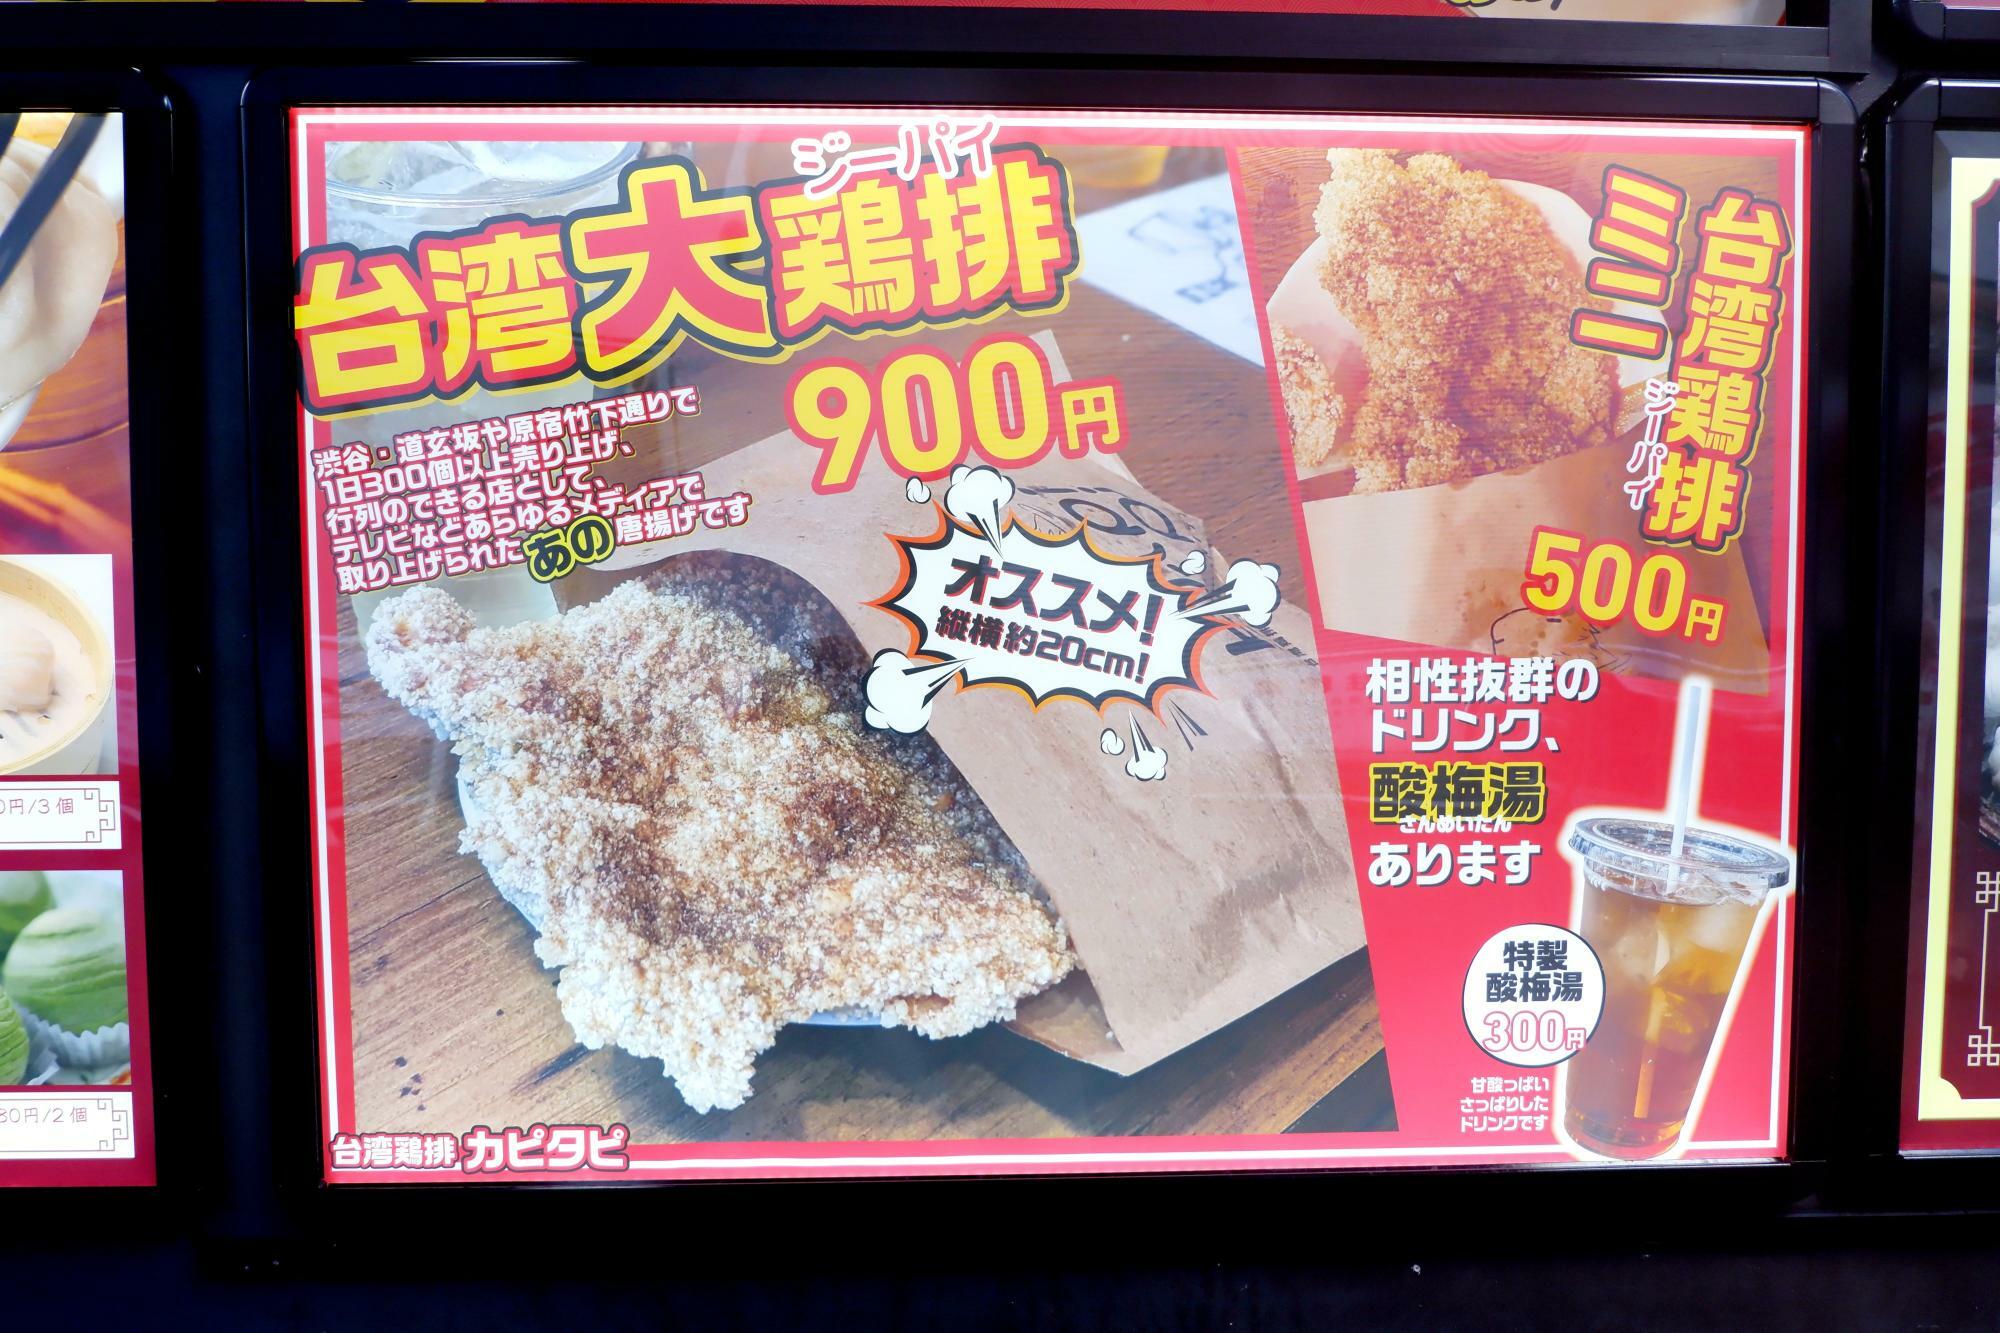 店頭のメニューには『カピタピ』の「台湾大鶏排」が写真入りで表示されています